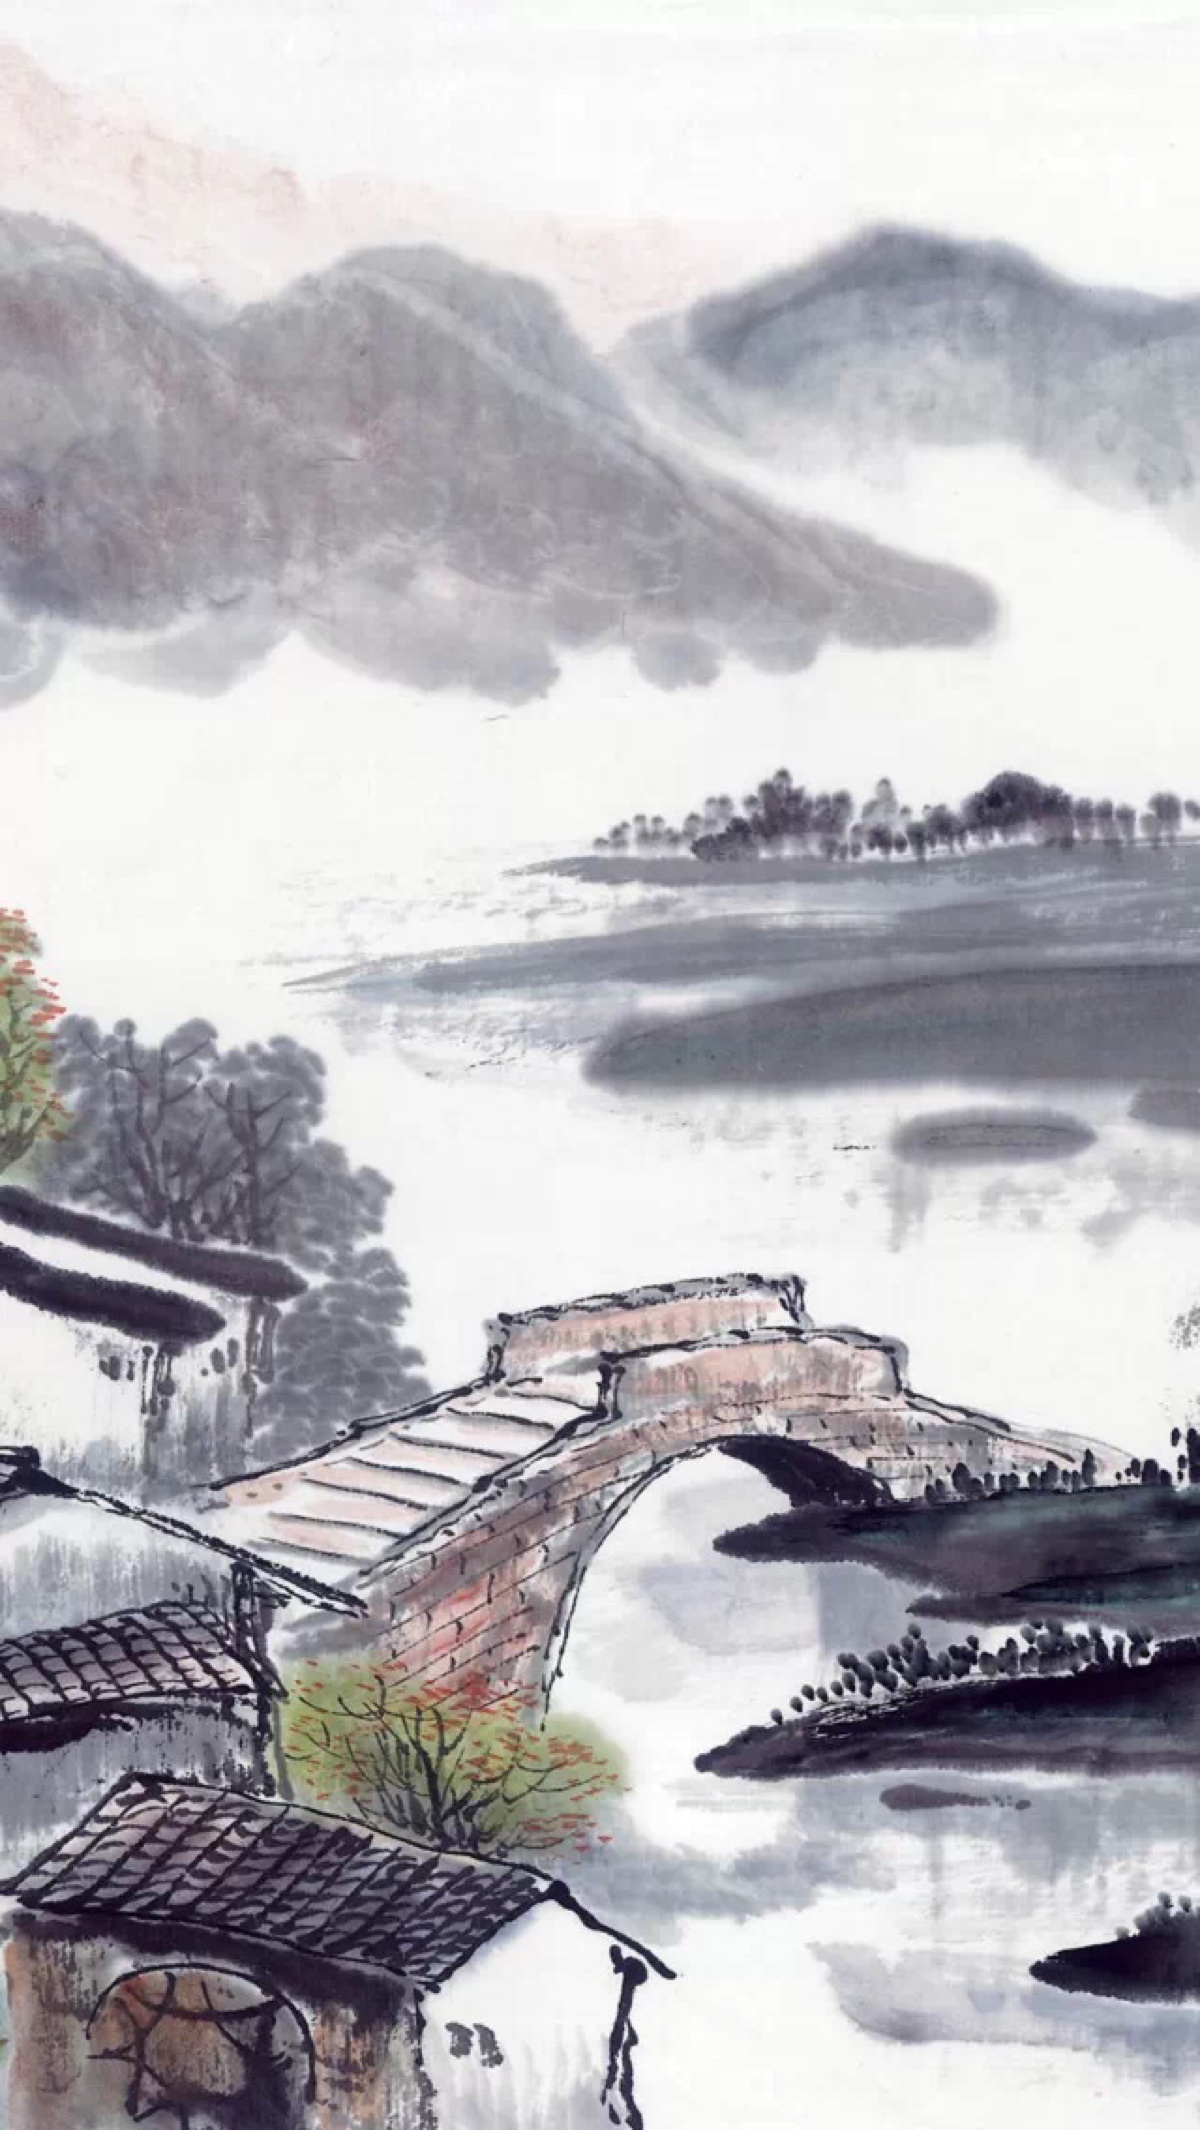 拱桥水墨画图片